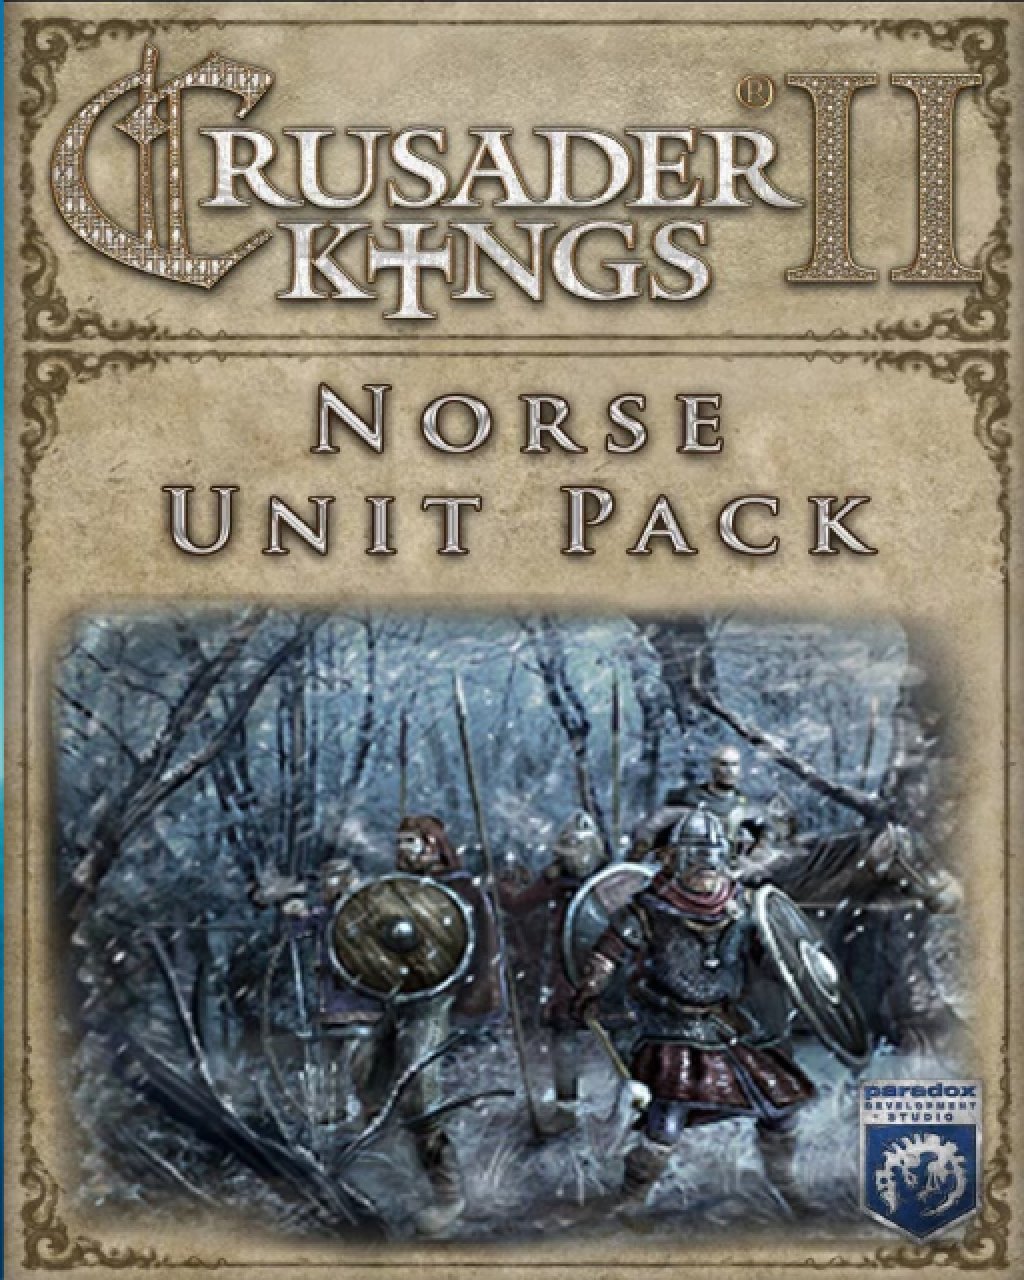 Crusader Kings II Norse Unit Pack